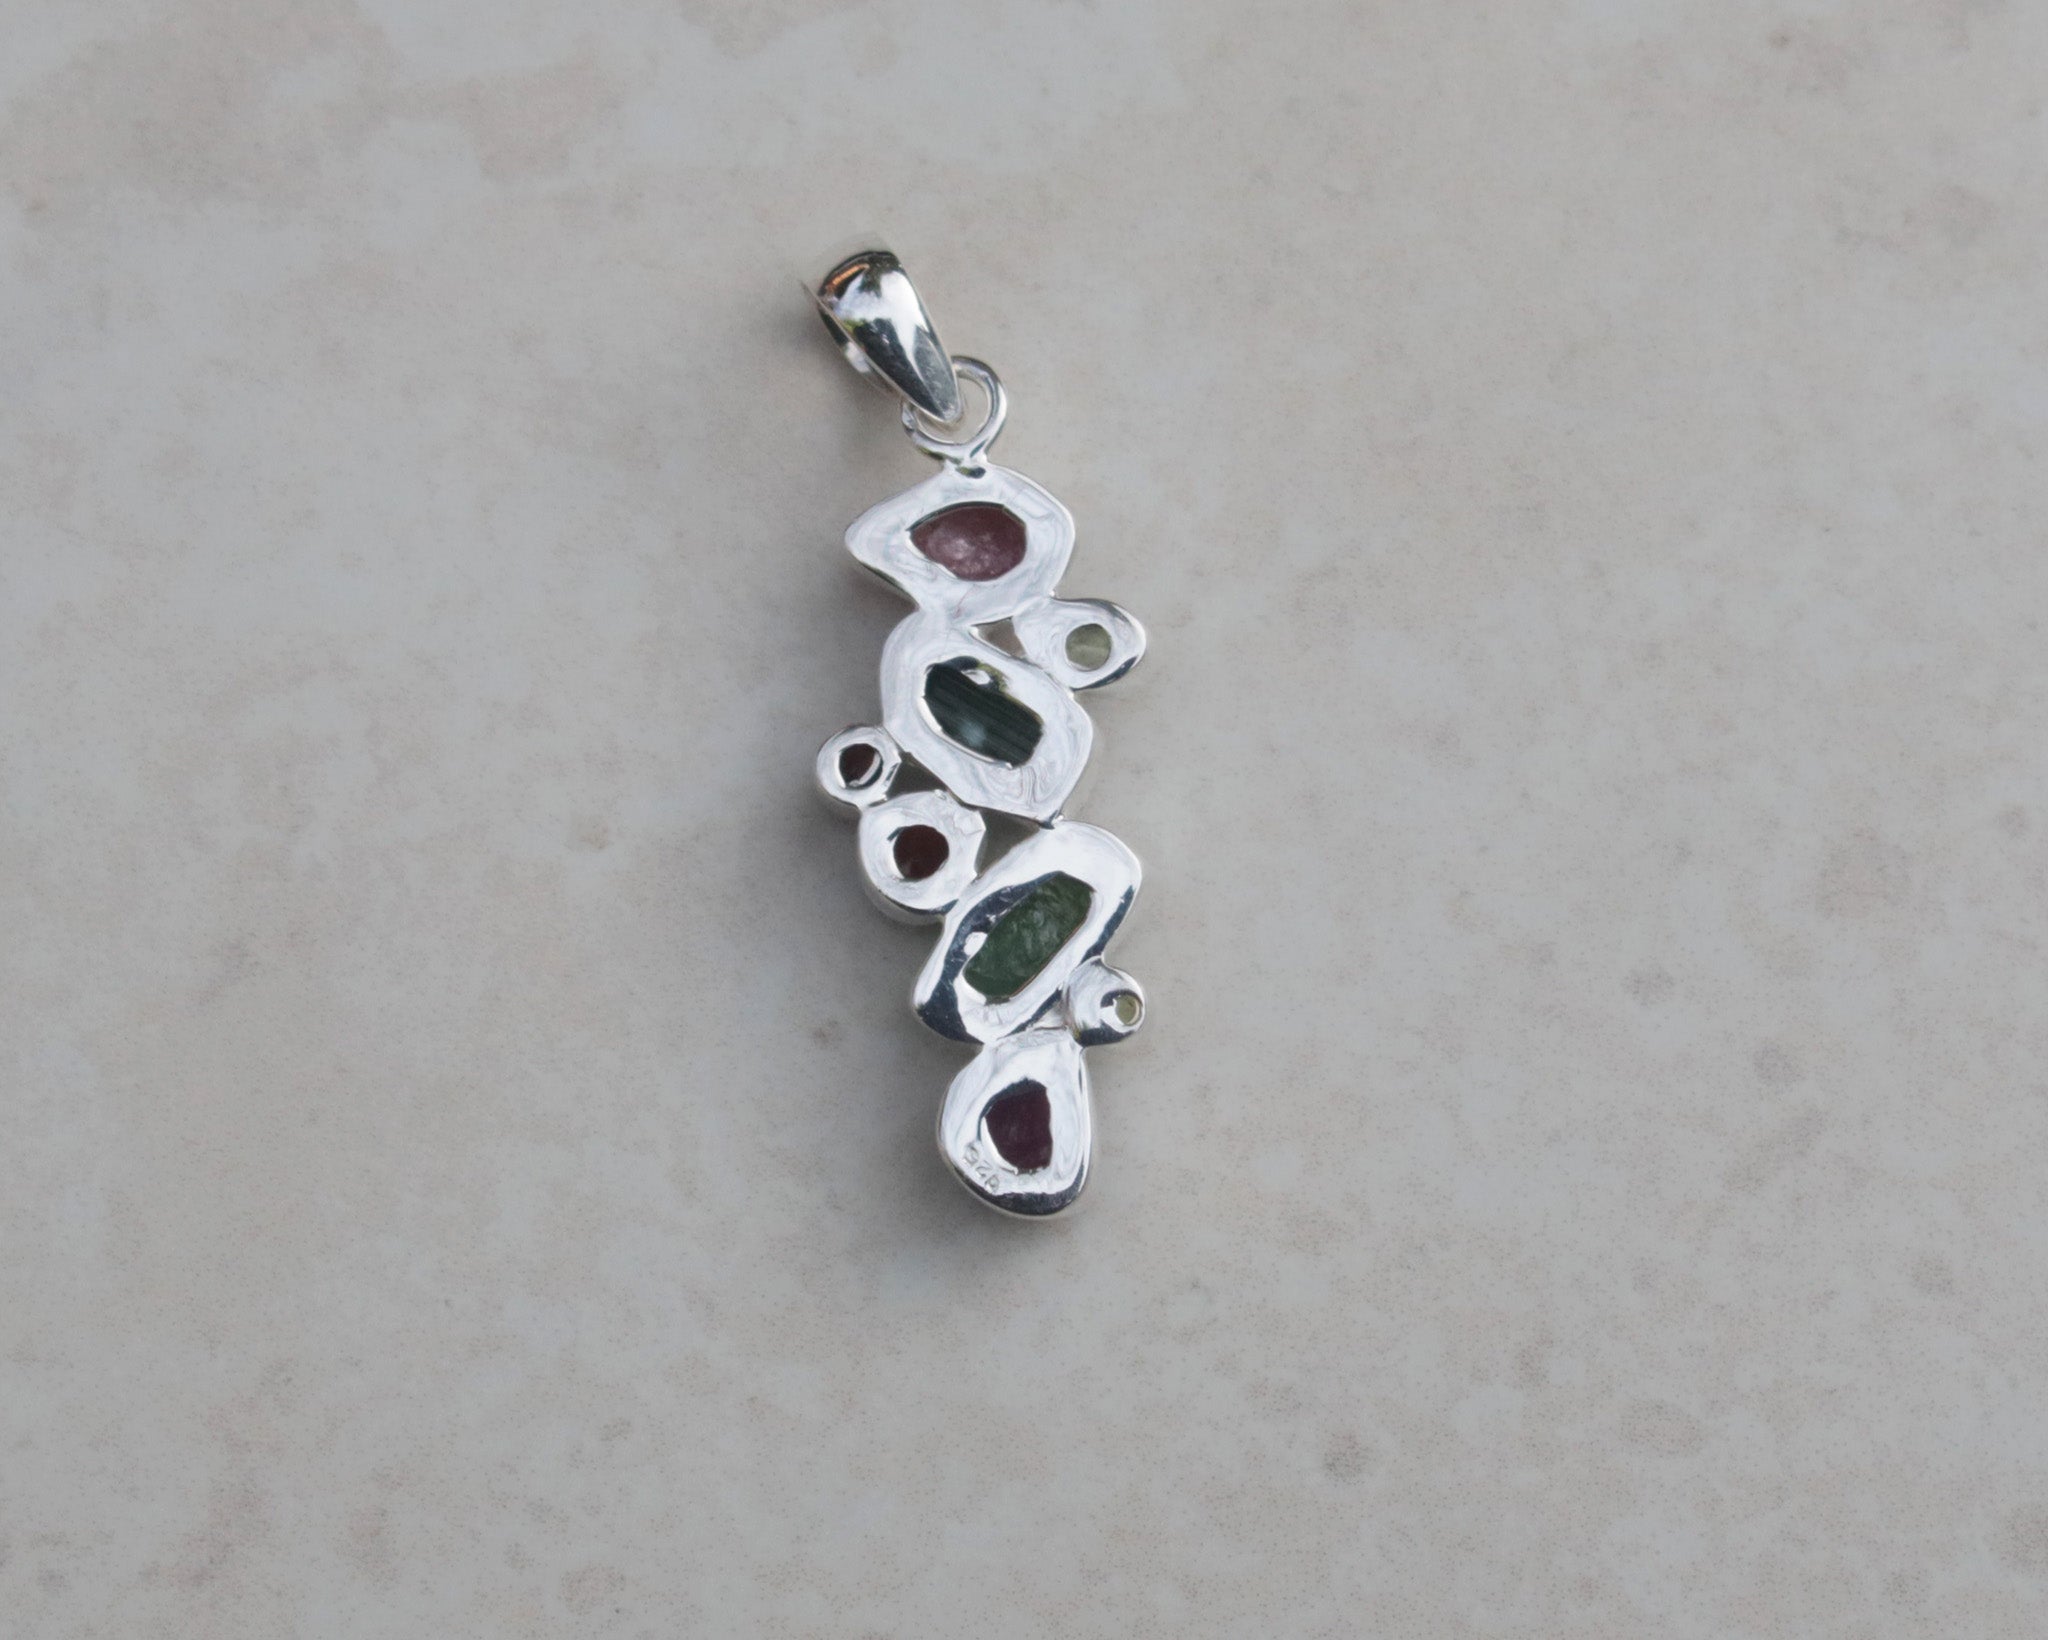 Silver Tourmaline, Peridot and Garnet pendant